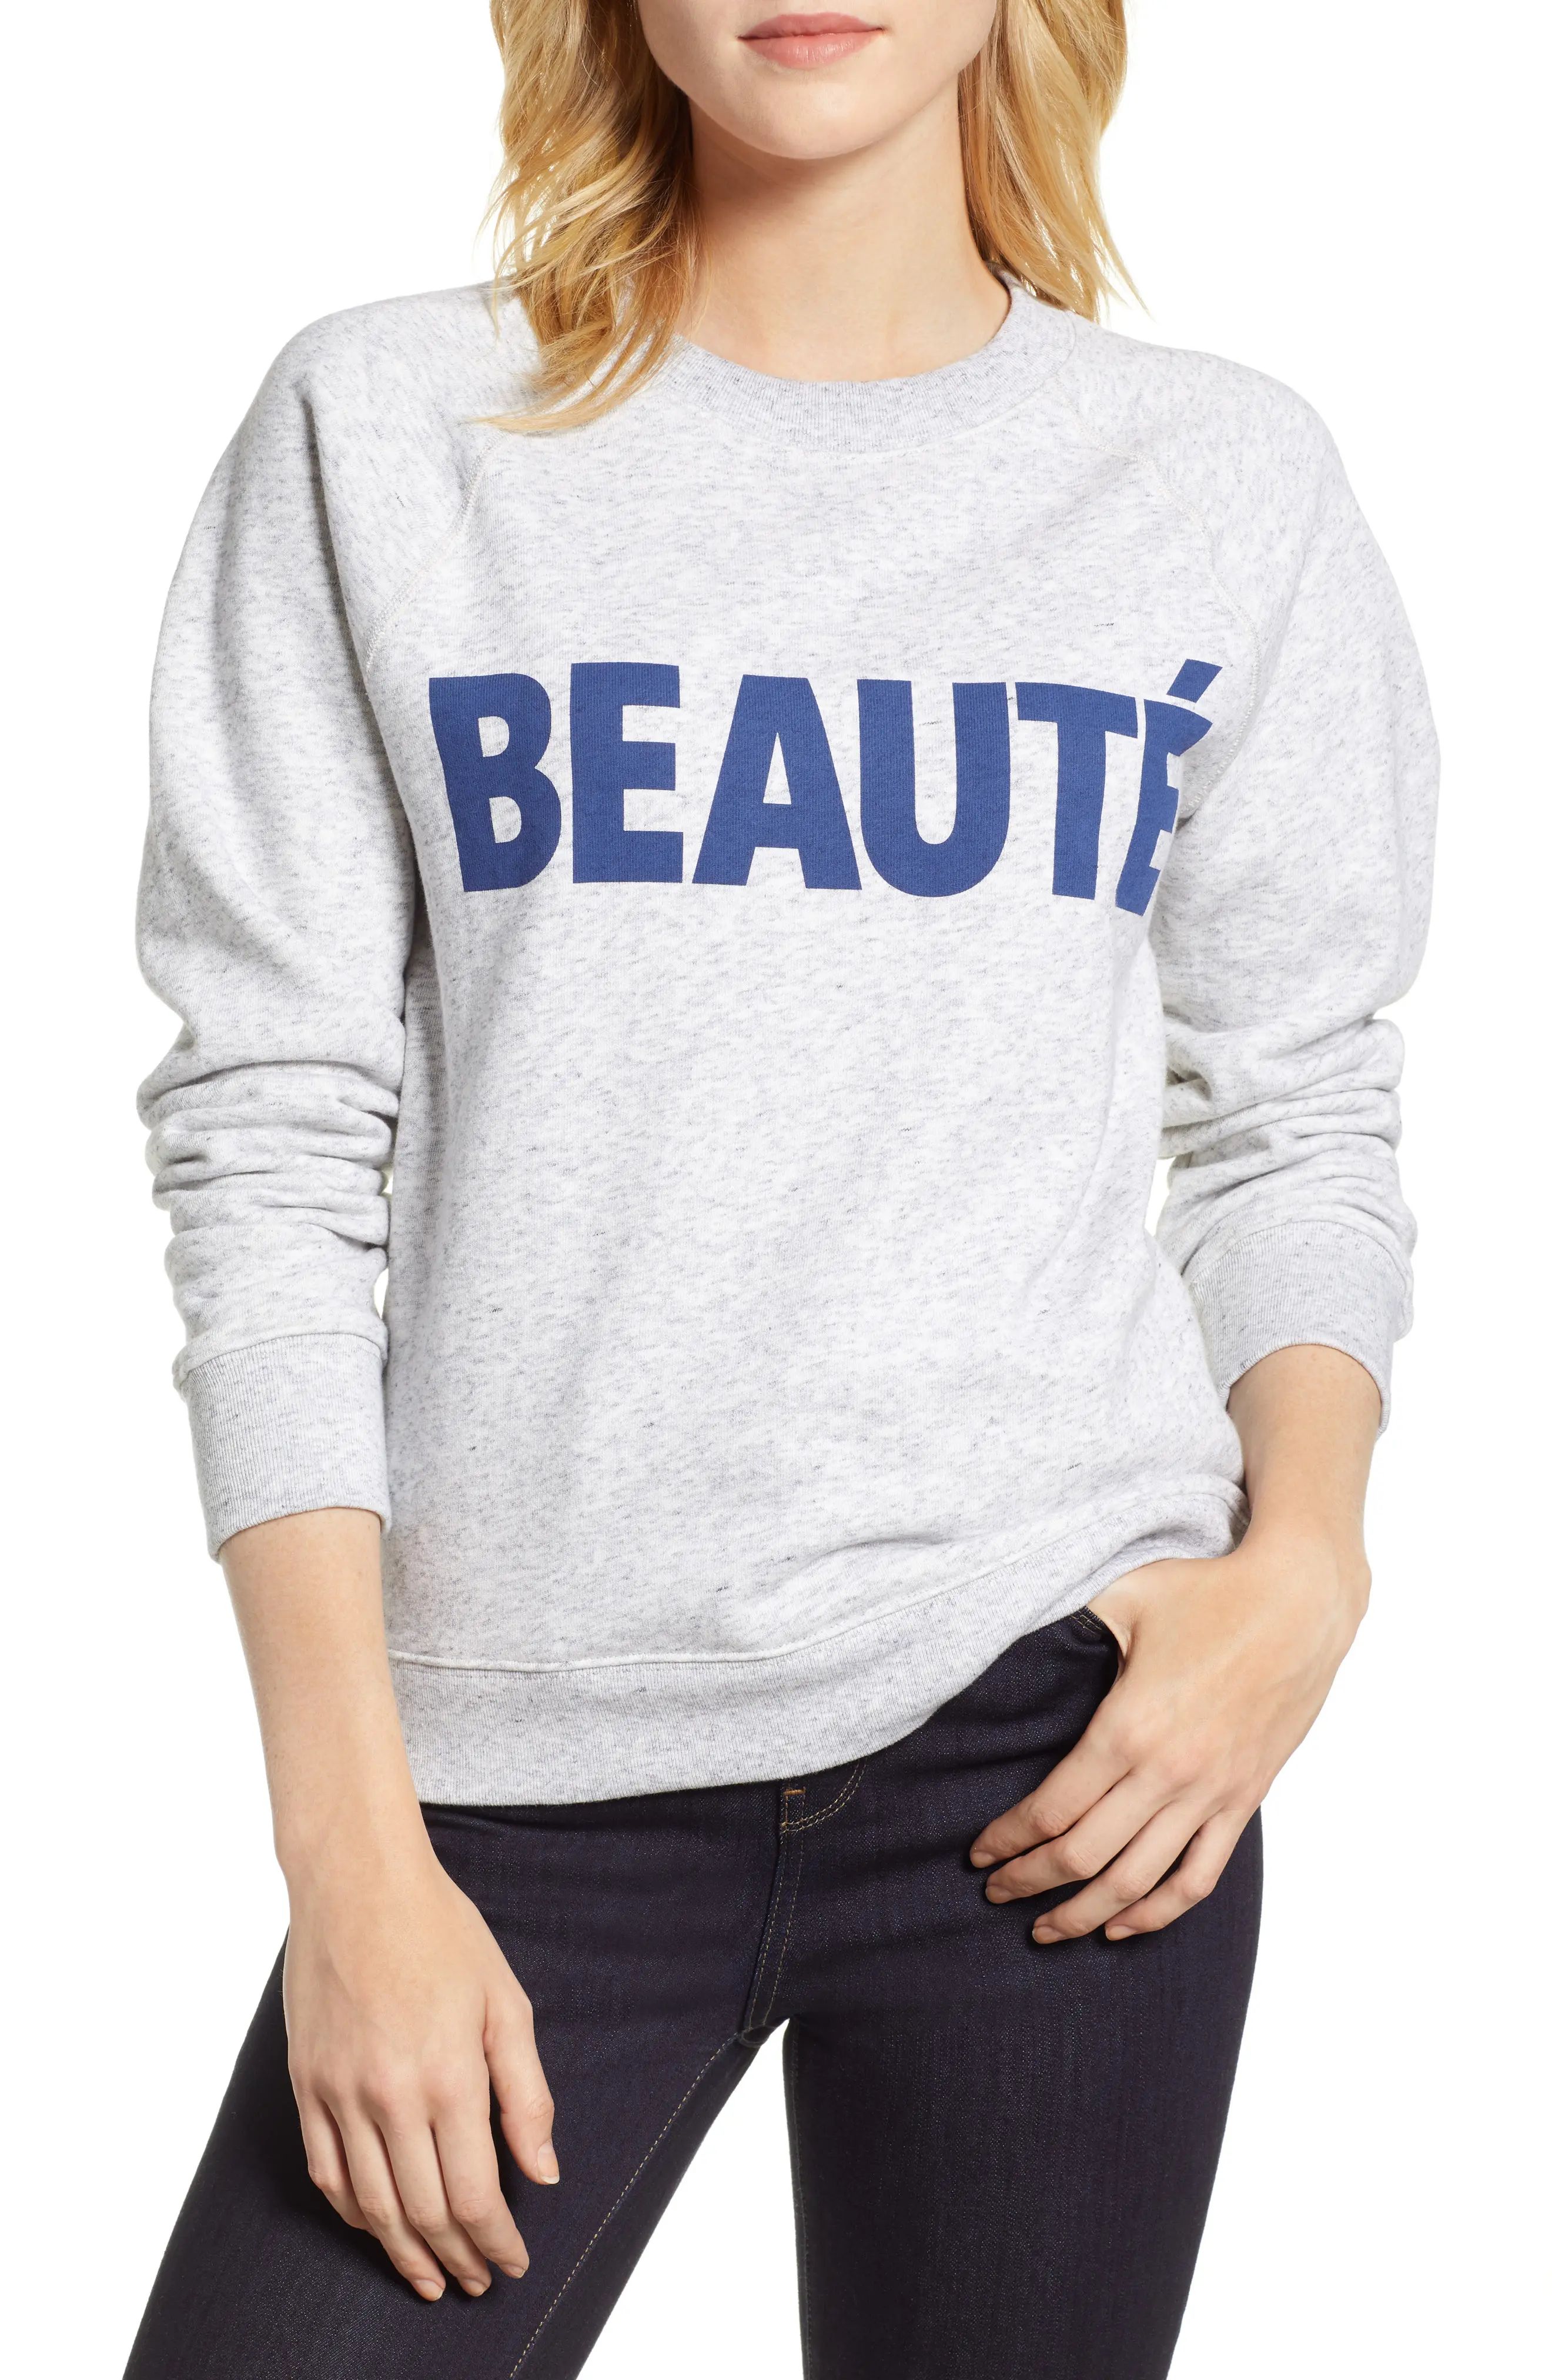 J.Crew Beauté Sweatshirt (Regular & Plus Size) | Nordstrom